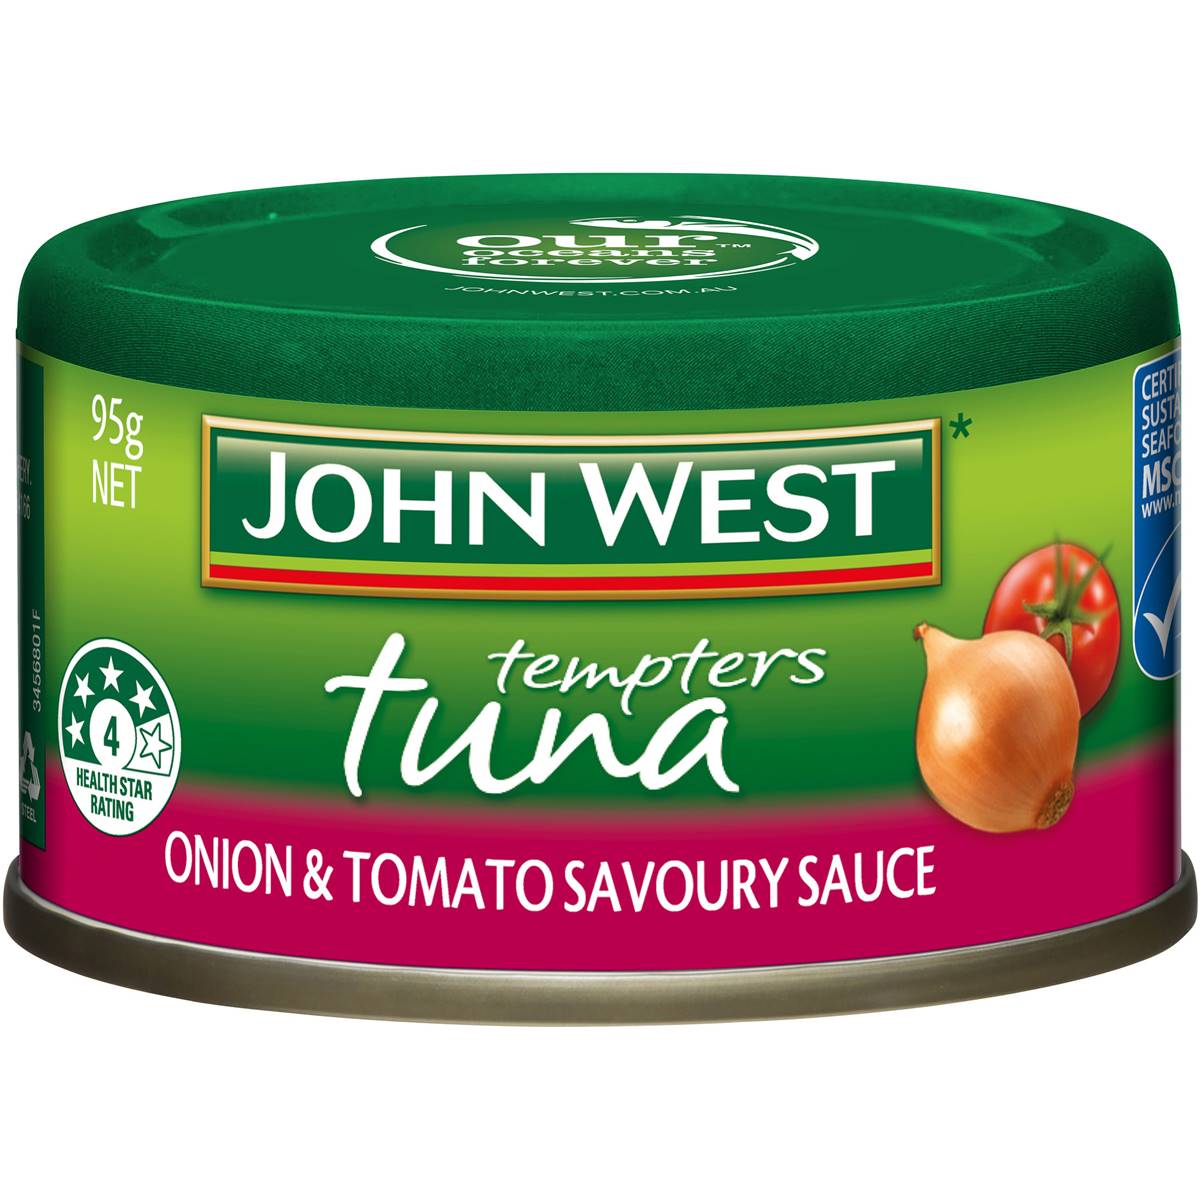 John West Tuna Tempters Onion & Tomato Savoury Sauce 95g